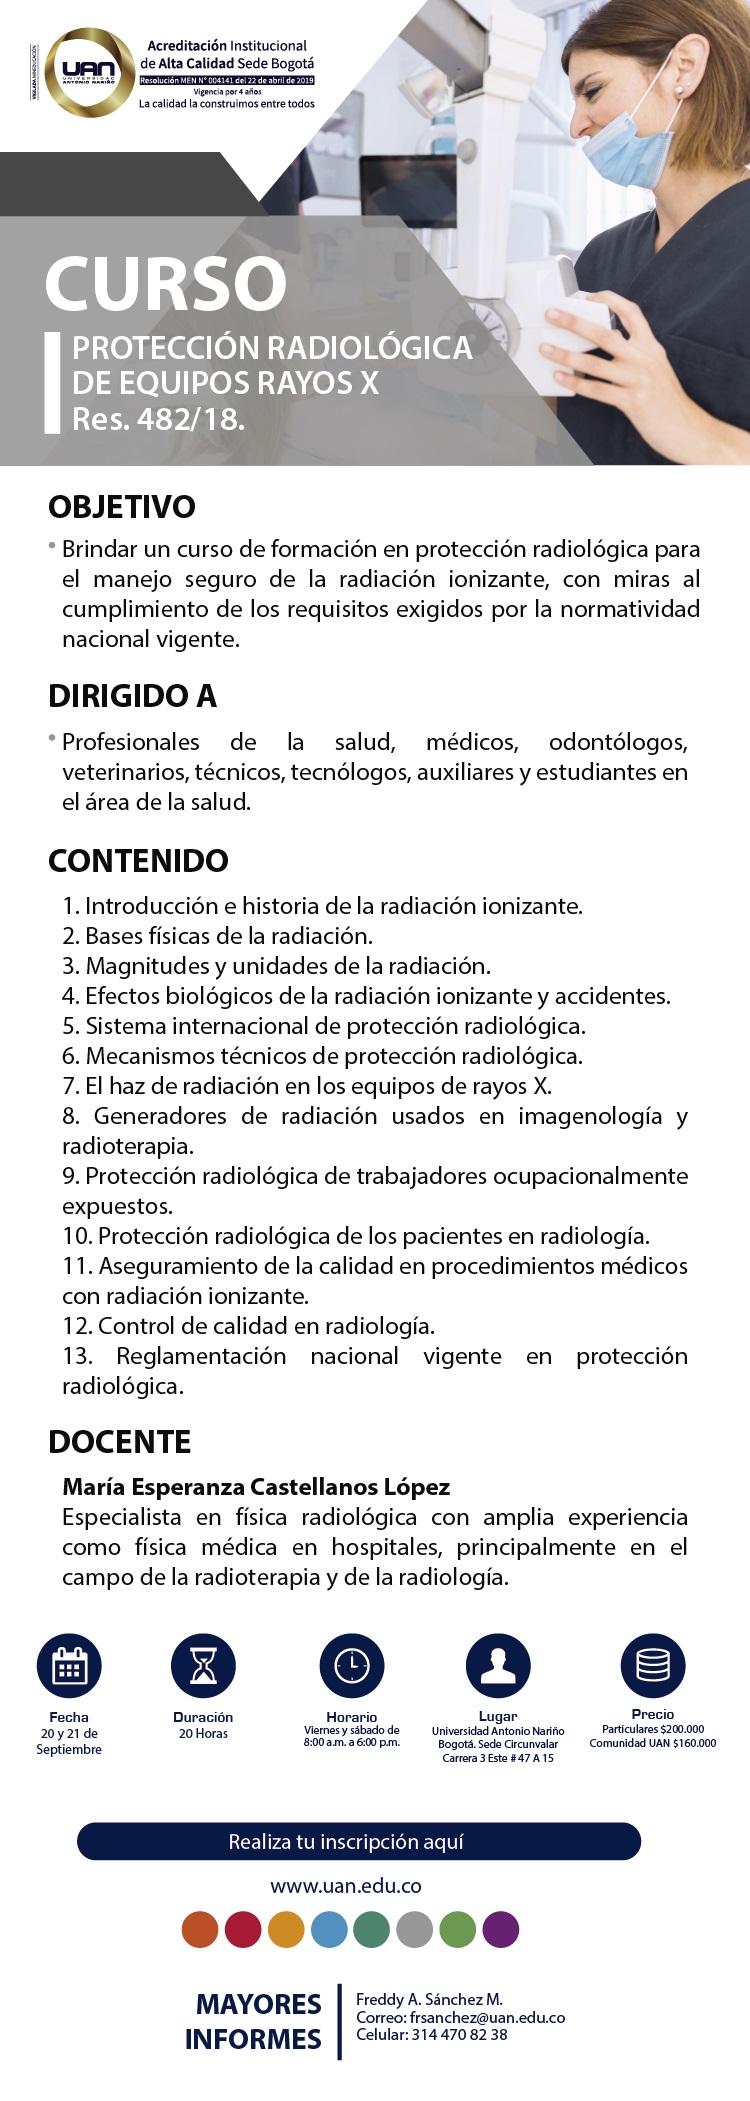 ProteccionRadiologicaEquiposRayosXRes482 18 Circunvalar2019 M